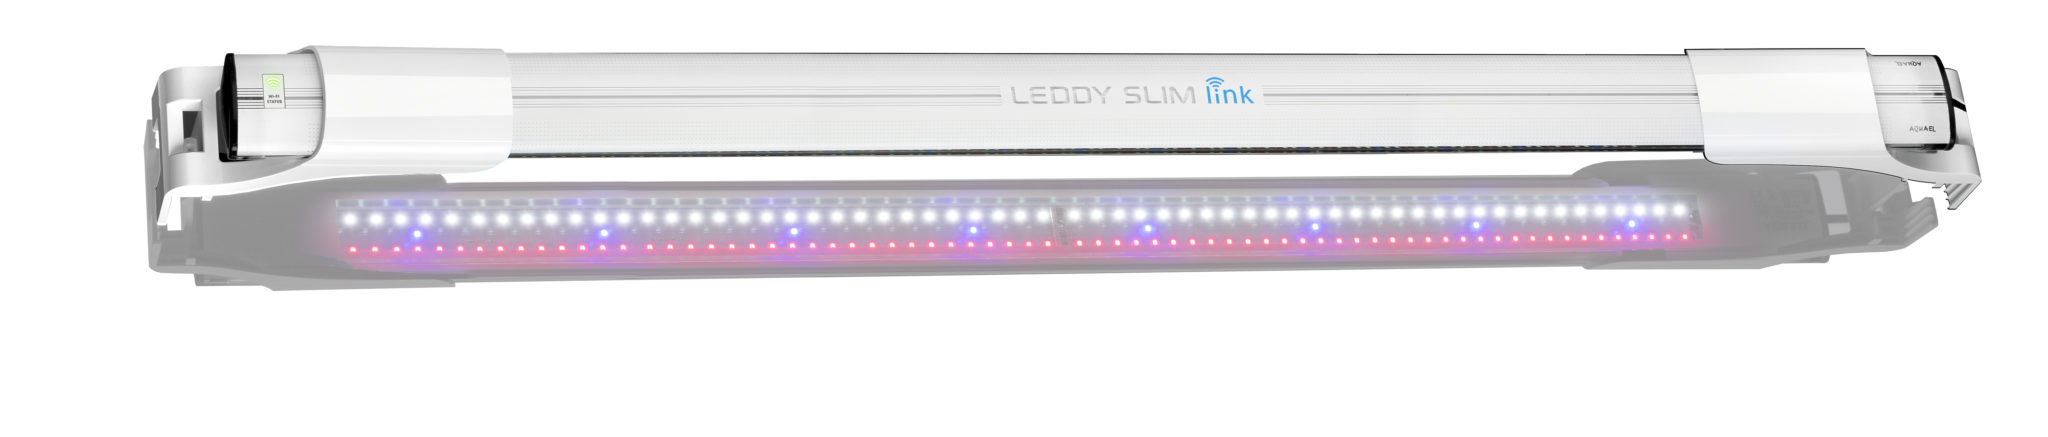 Светильник LED Aquael LEDDY SLIM LINK белый 36W